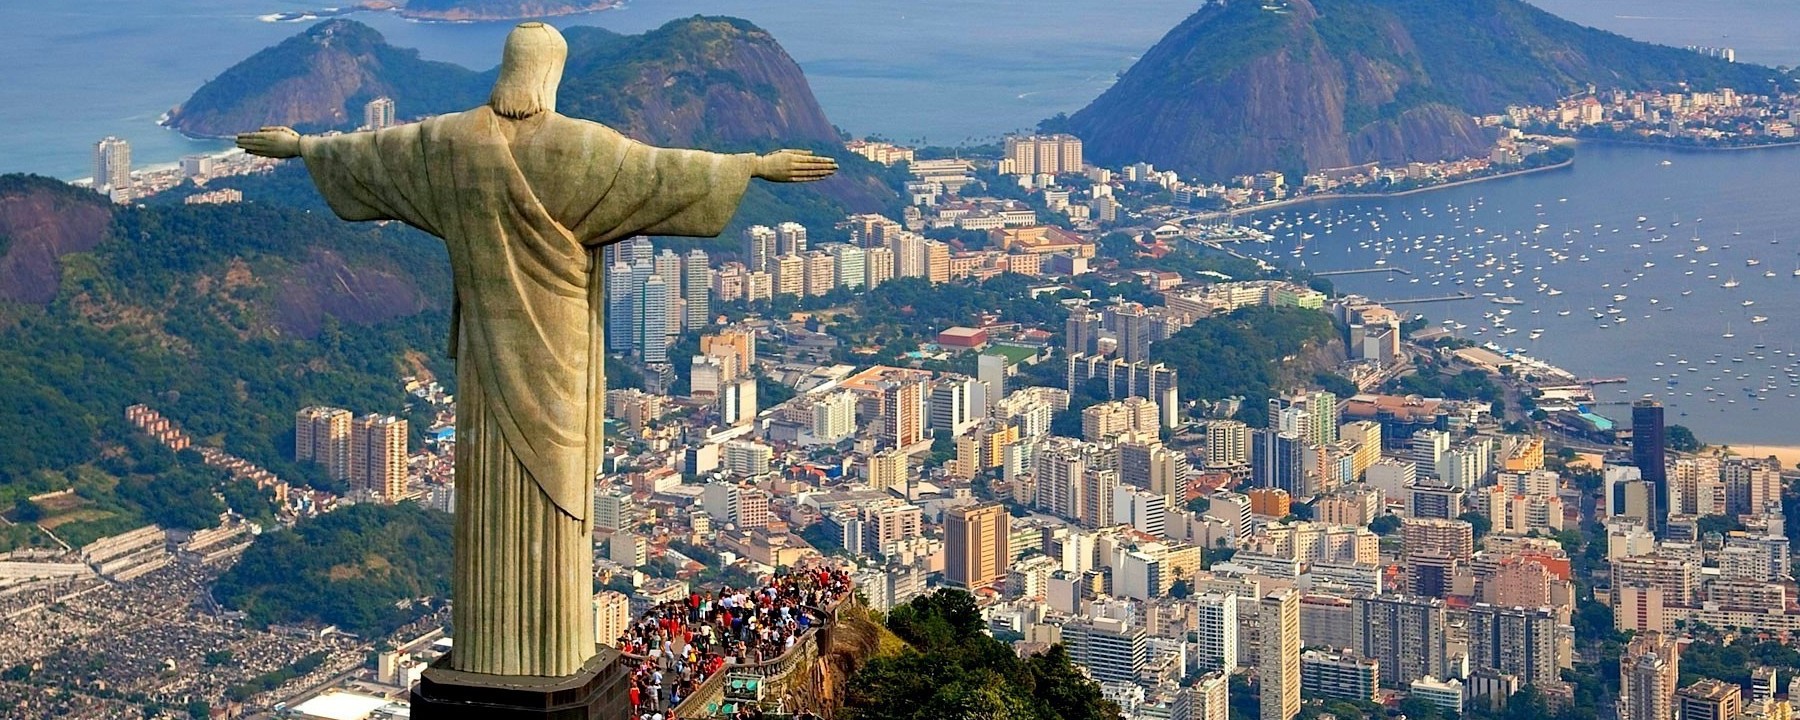 Достопримечательности Рио де Жанейро.